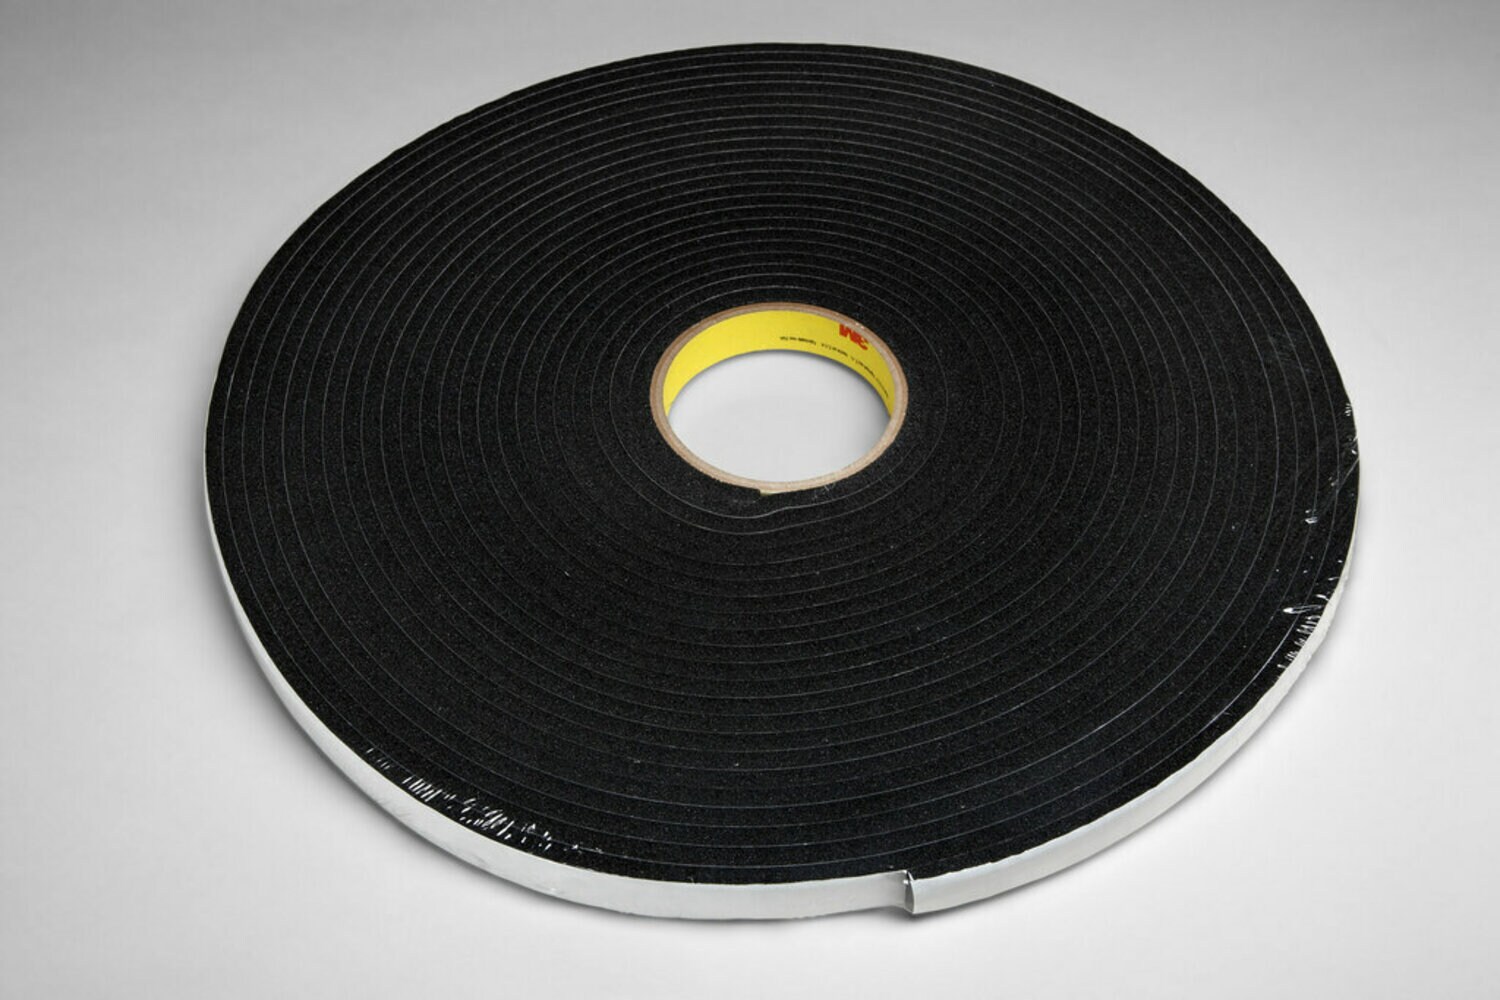 7010369057 - 3M Vinyl Foam Tape 4504, Black, 3/8 in x 18 yd, 250 mil, 24 rolls per
case